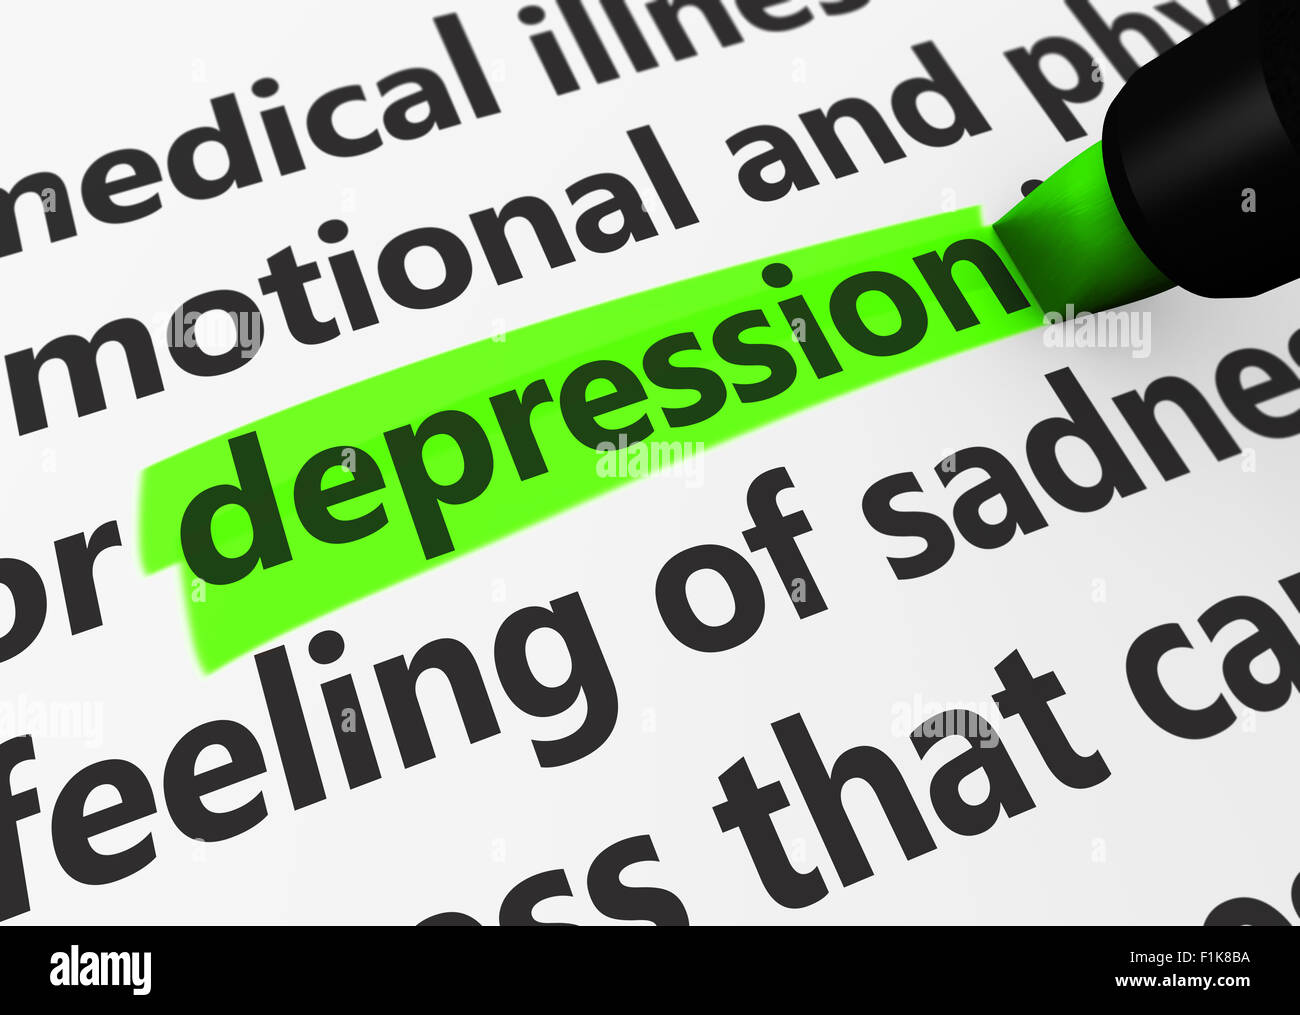 La cura della salute, malattia e infermità concetto con un close-up 3d rendering della depressione parola evidenziata con un pennarello verde. Foto Stock